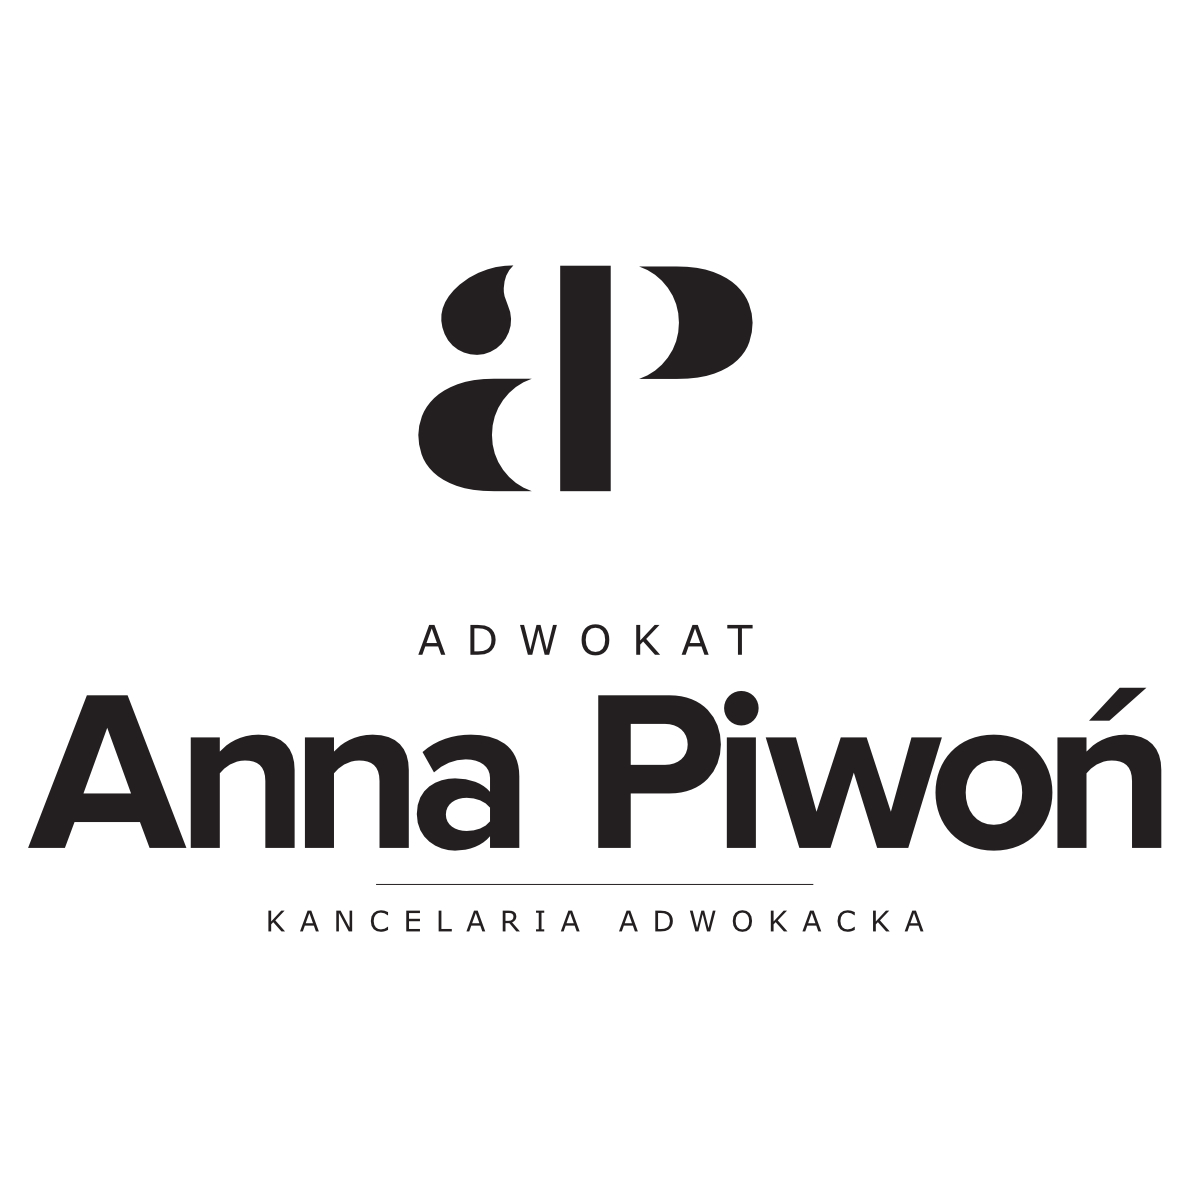 Anna Piwoń